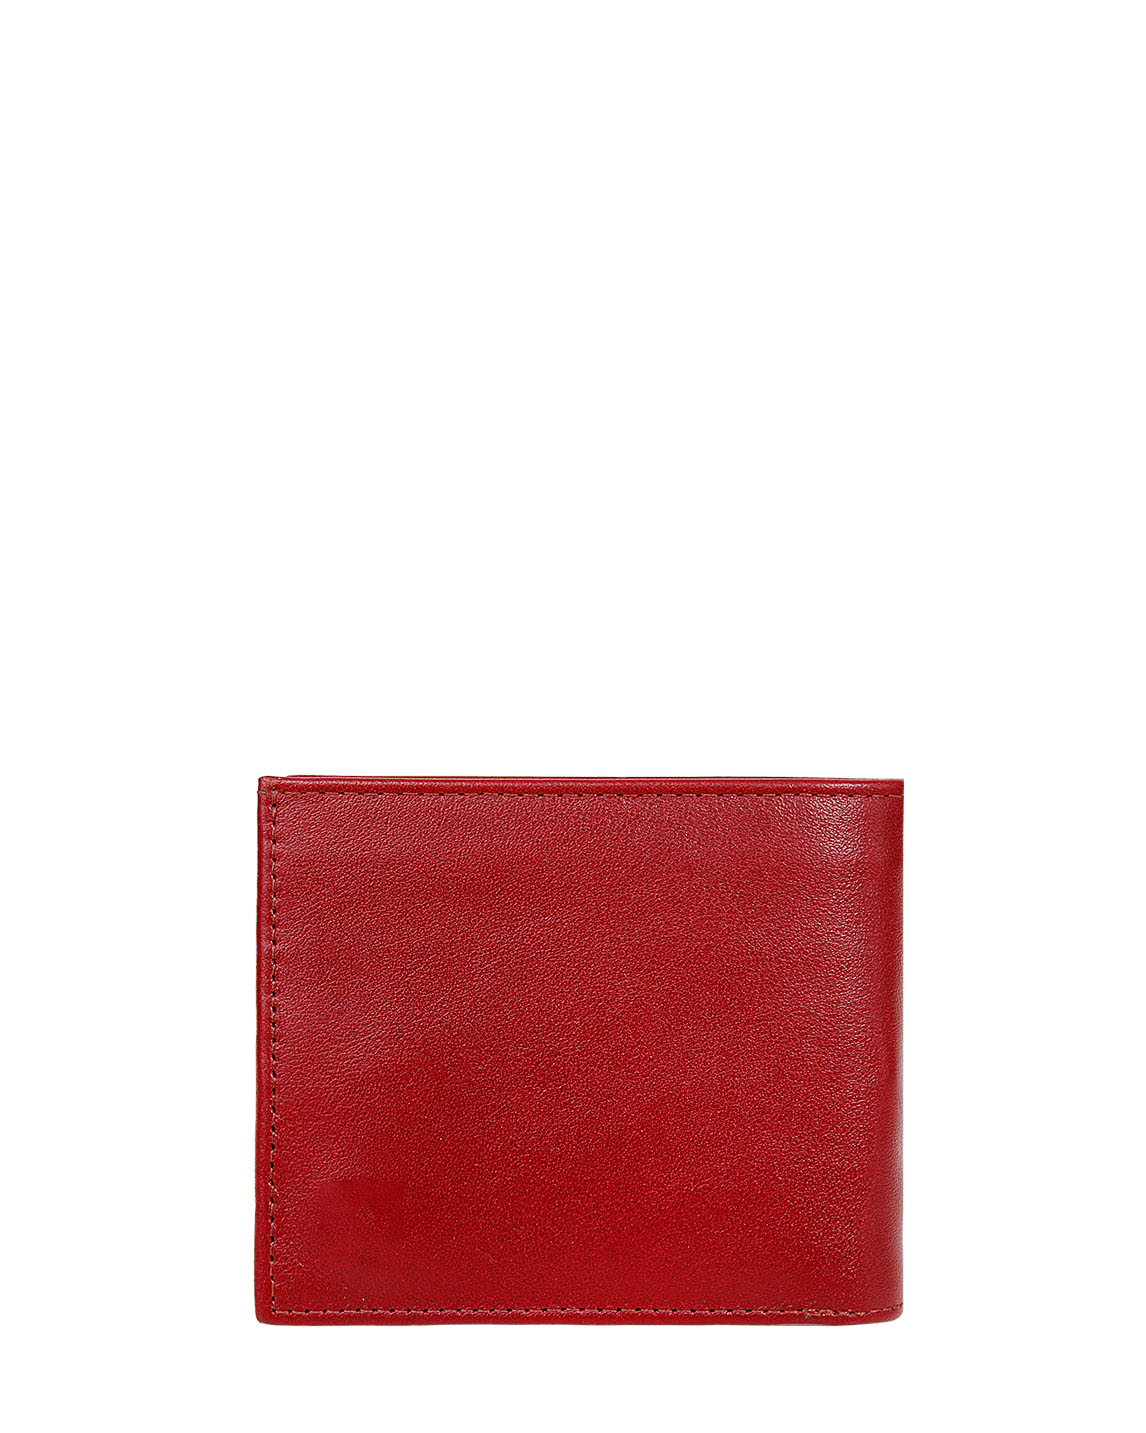 Billetera de Hombre BH-66 Color Rojo